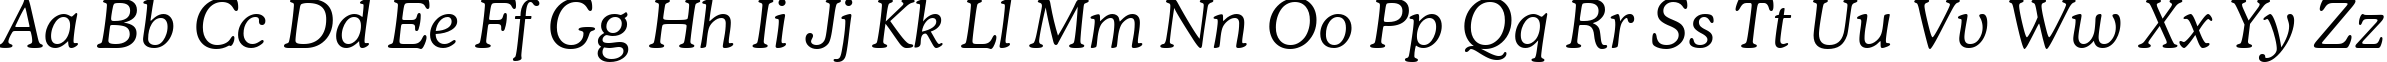 Пример написания английского алфавита шрифтом font115